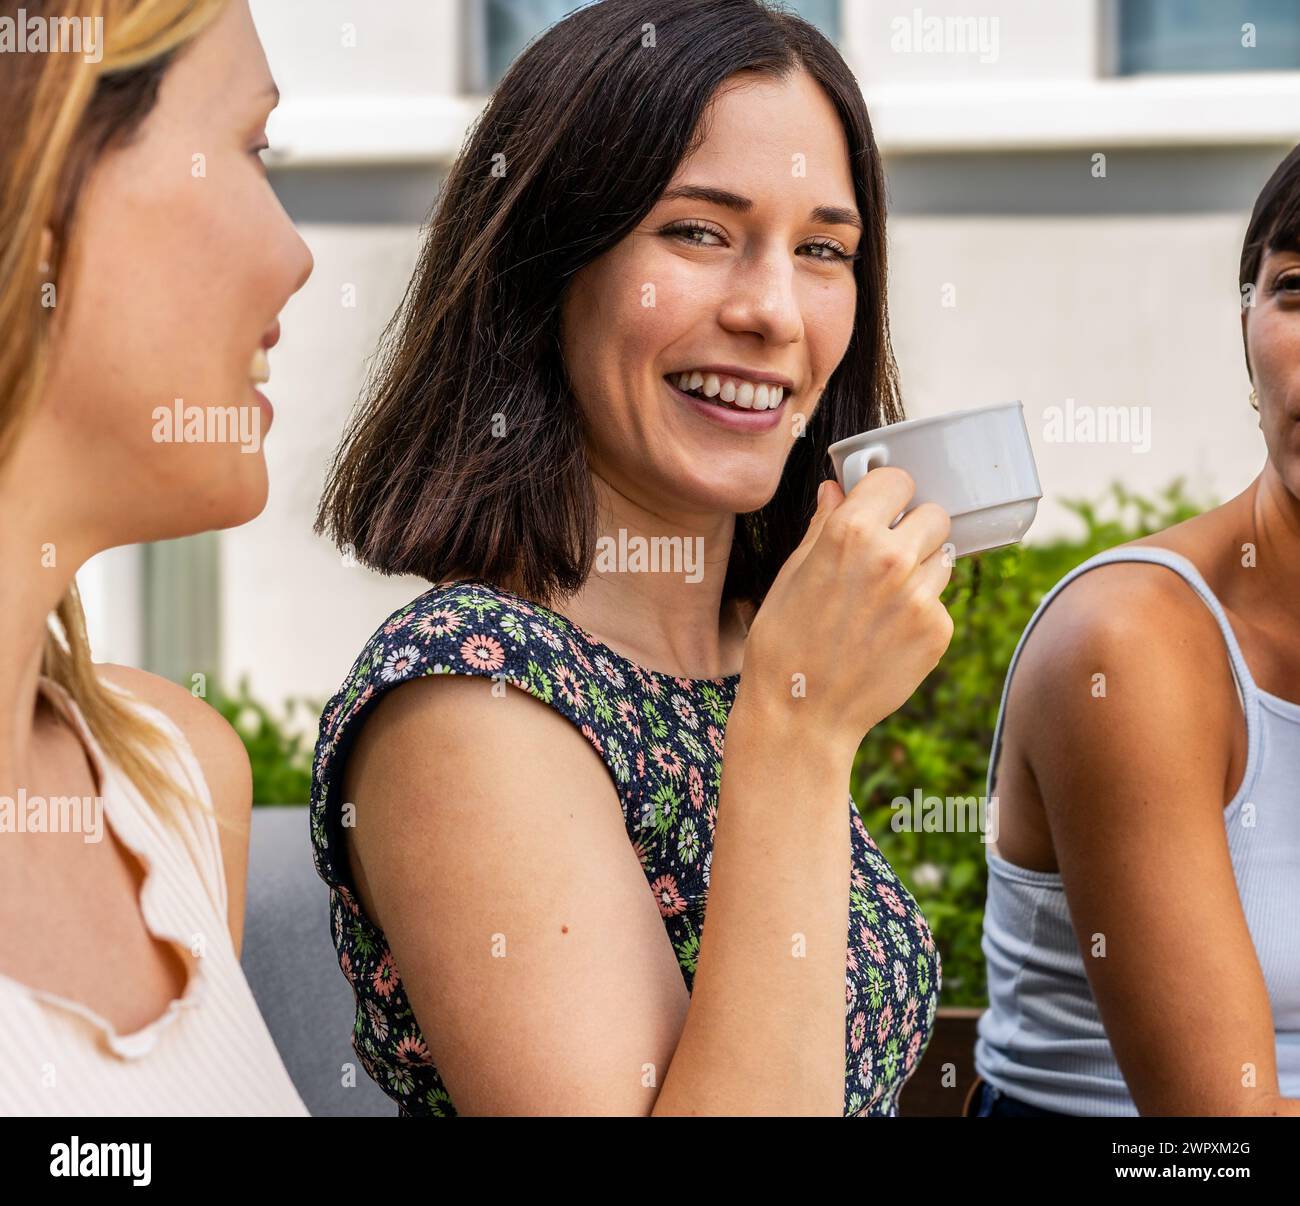 Trois femmes sont assises ensemble et l'une d'elles tient une tasse. La femme avec la coupe est souriante et regarde la caméra et les deux autres femmes Ar Banque D'Images